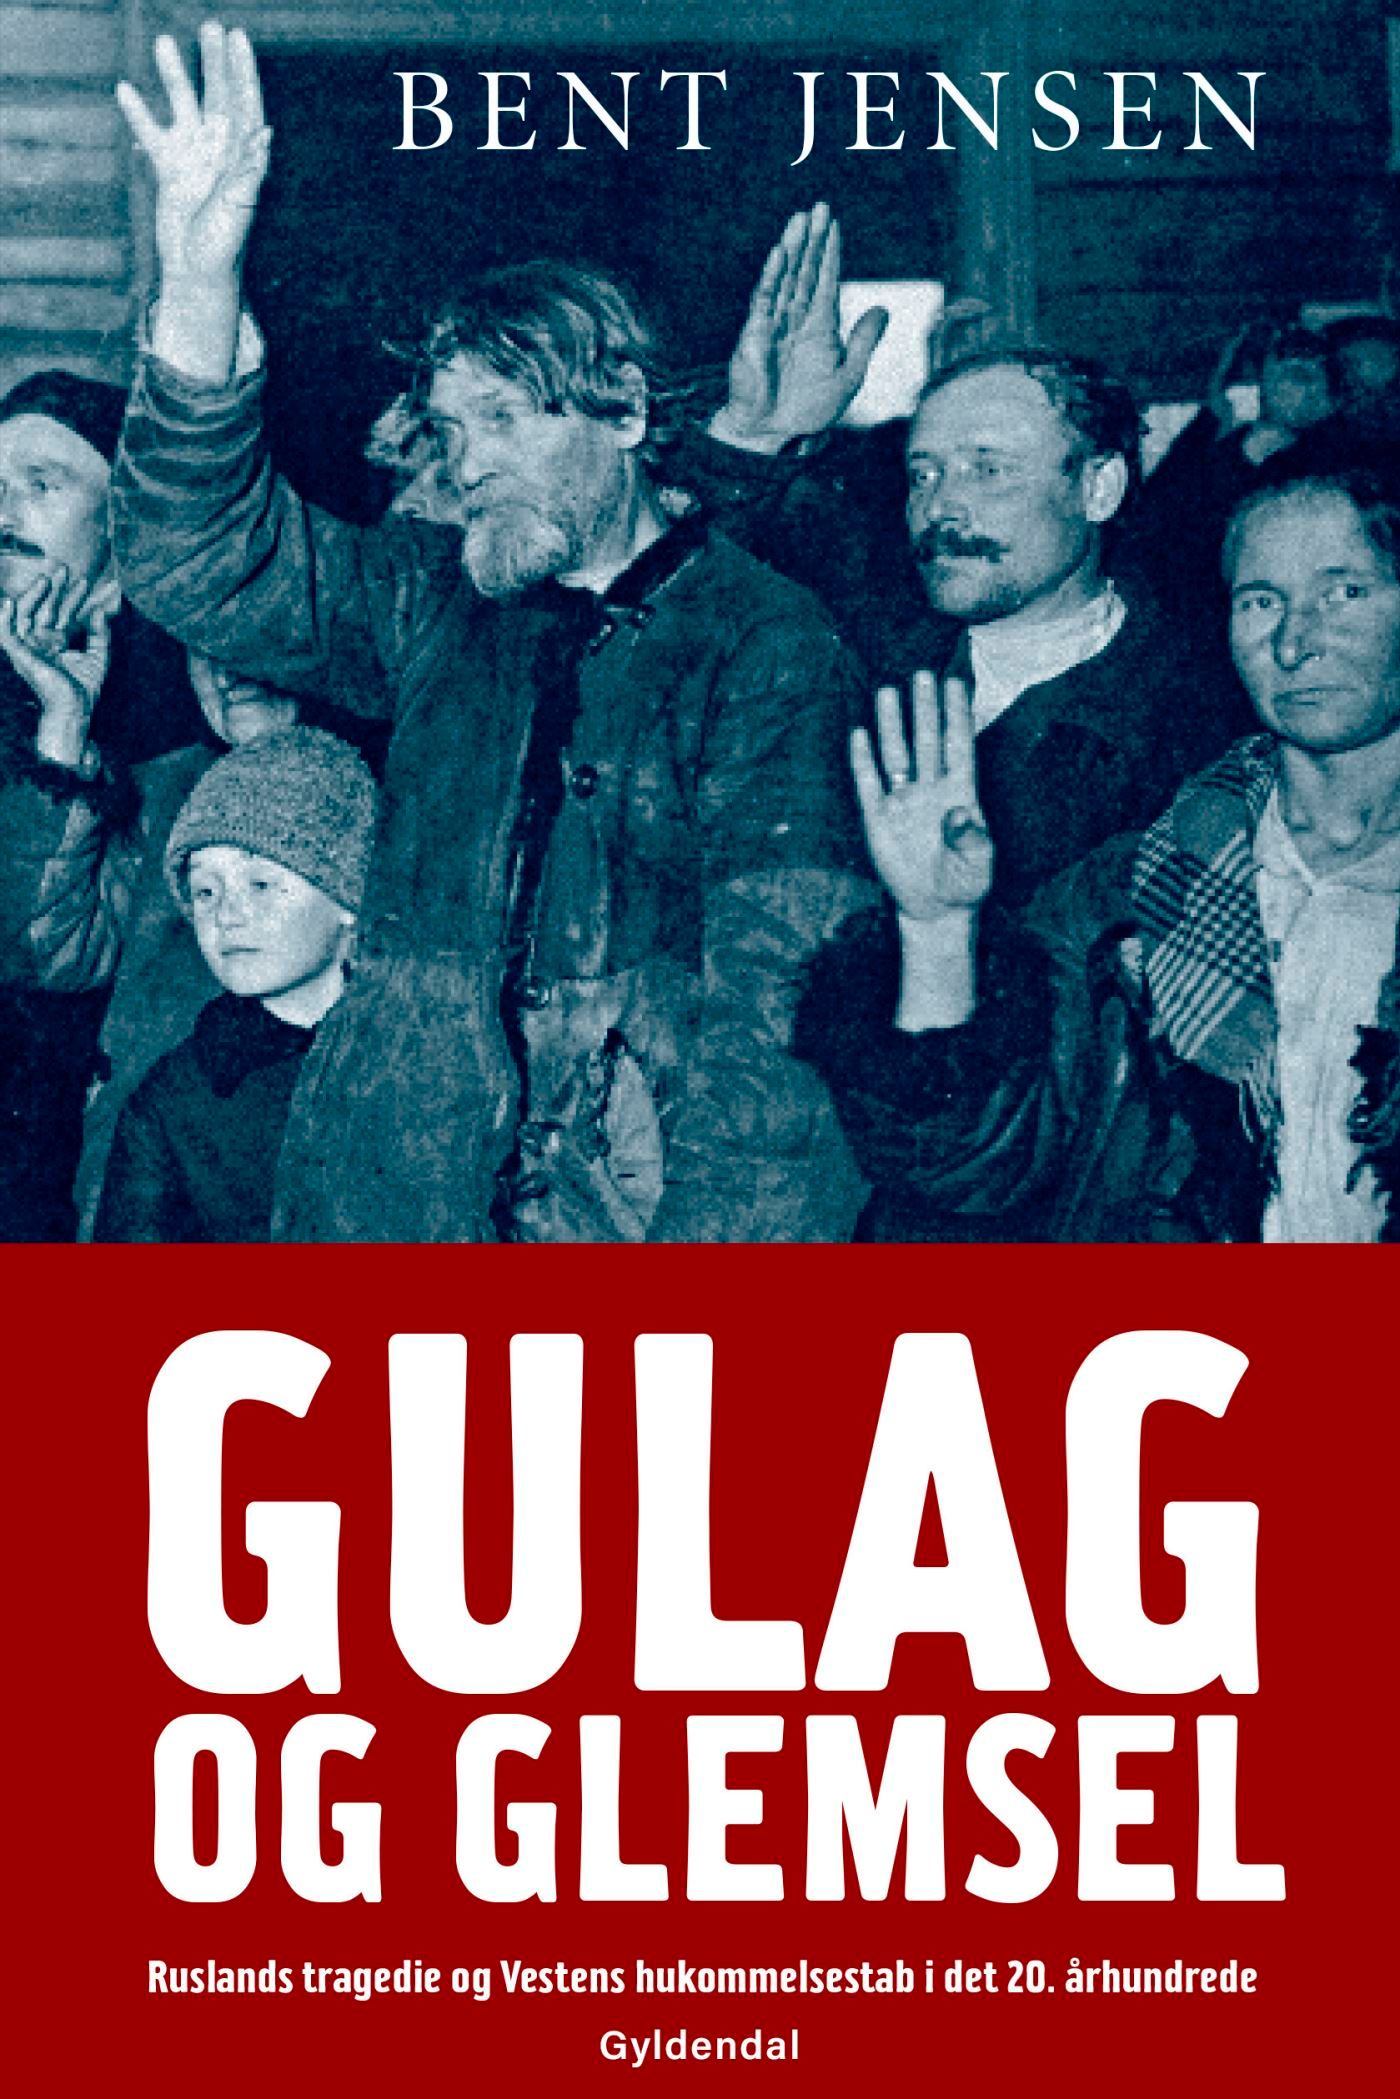 Gulag og glemsel, e-bok av Bent Jensen